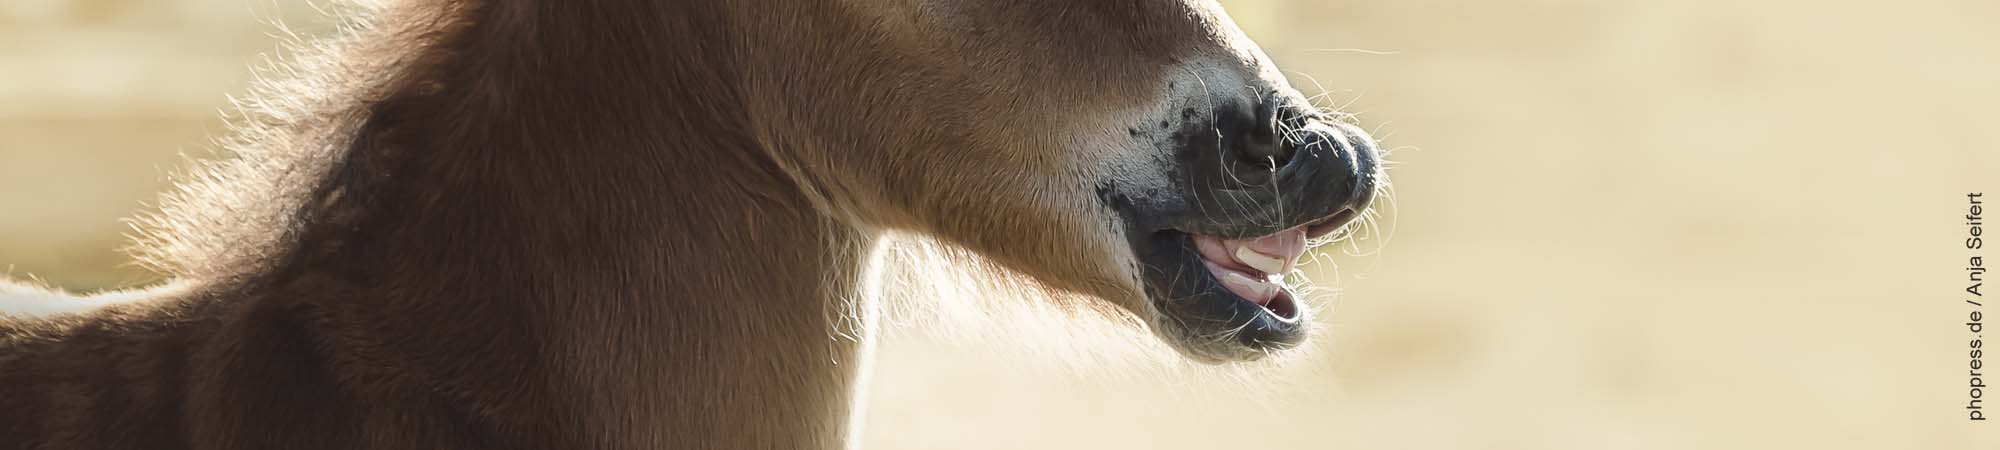 Wieviele Milchzähne hat ein Pferd?